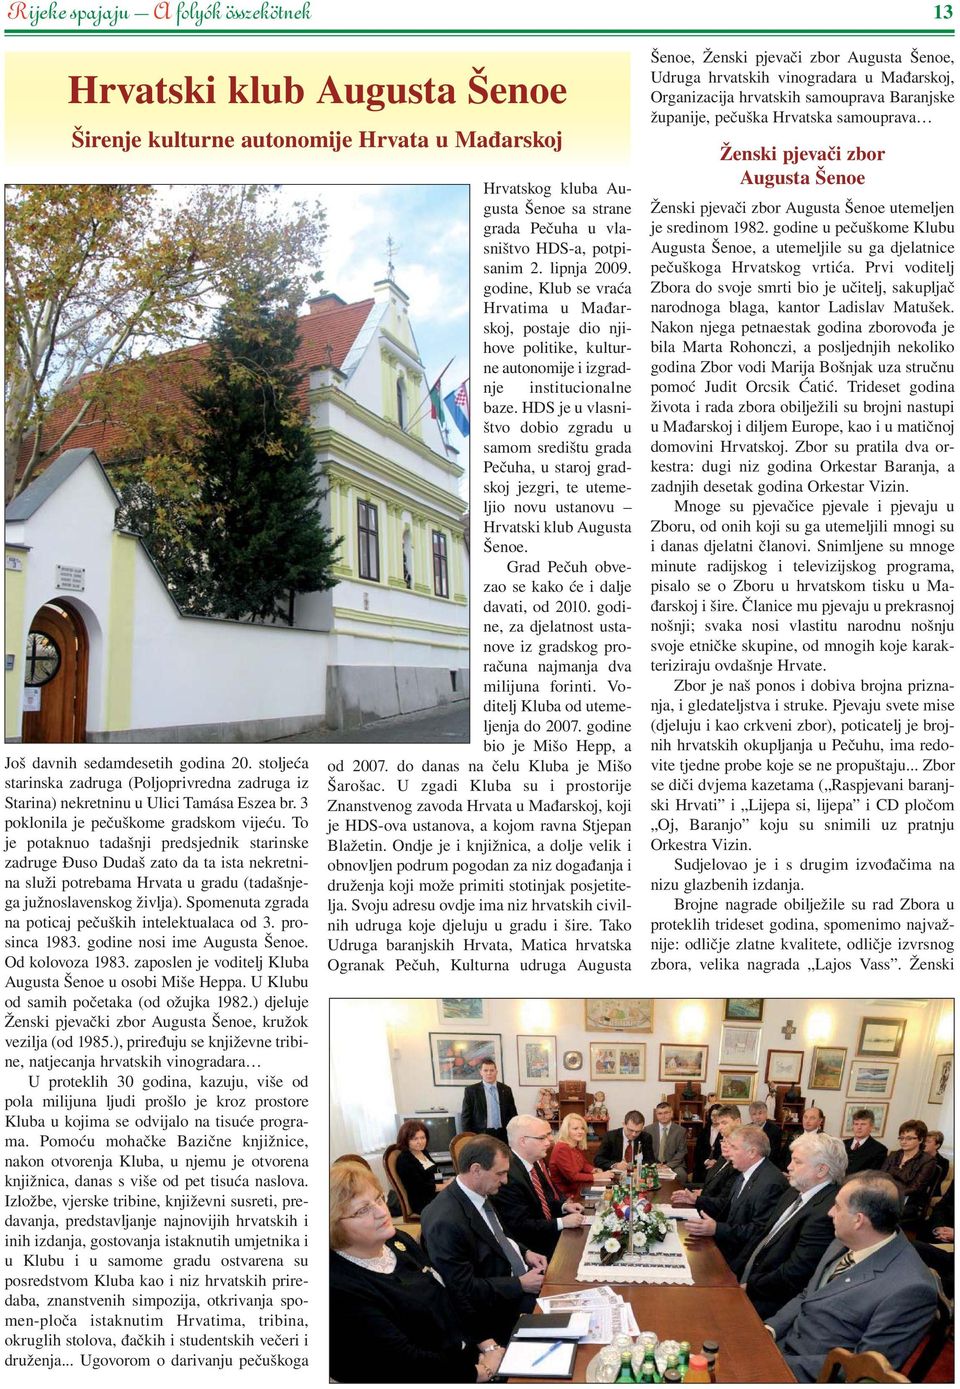 To je potaknuo tadašnji predsjednik starinske zadruge Đuso Dudaš zato da ta ista nekretnina služi potrebama Hrvata u gradu (tadašnjega južnoslavenskog življa).